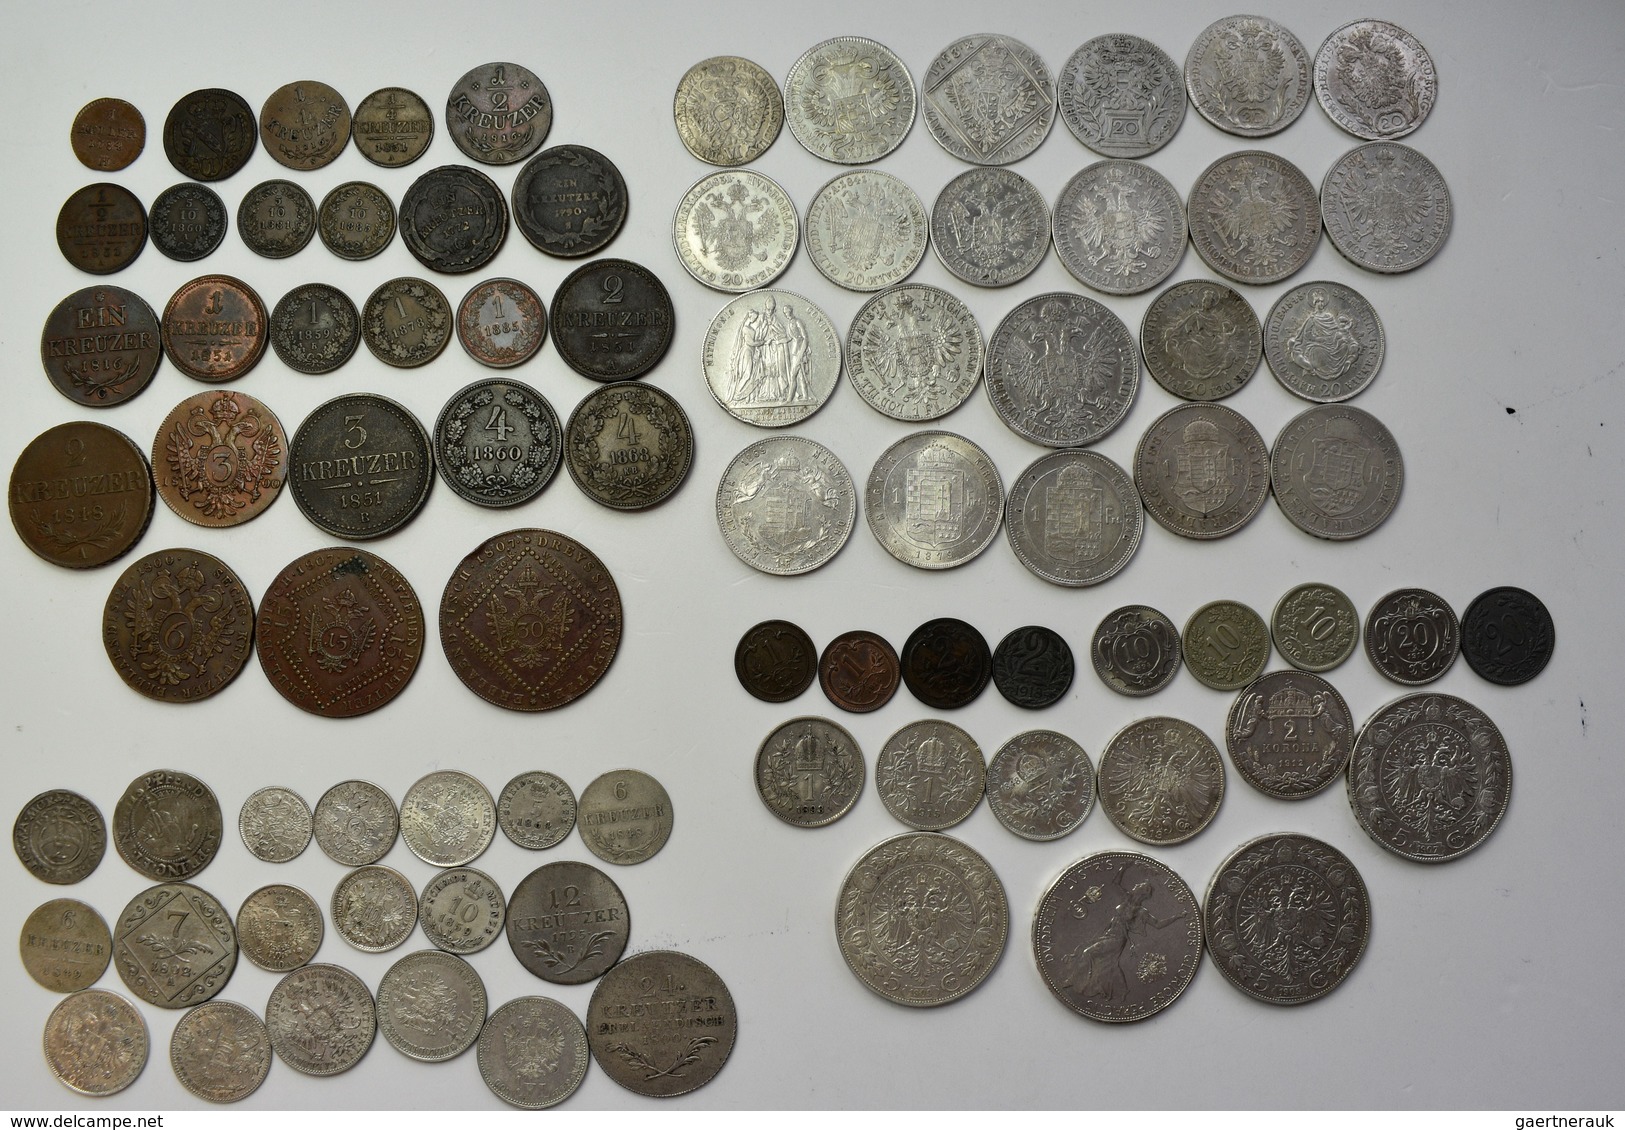 Haus Habsburg: Sammlung über 80 Diverse Münzen Aus Österreich-Ungarn, überwiegend 19. Jhd. Bis Krone - Sonstige – Europa